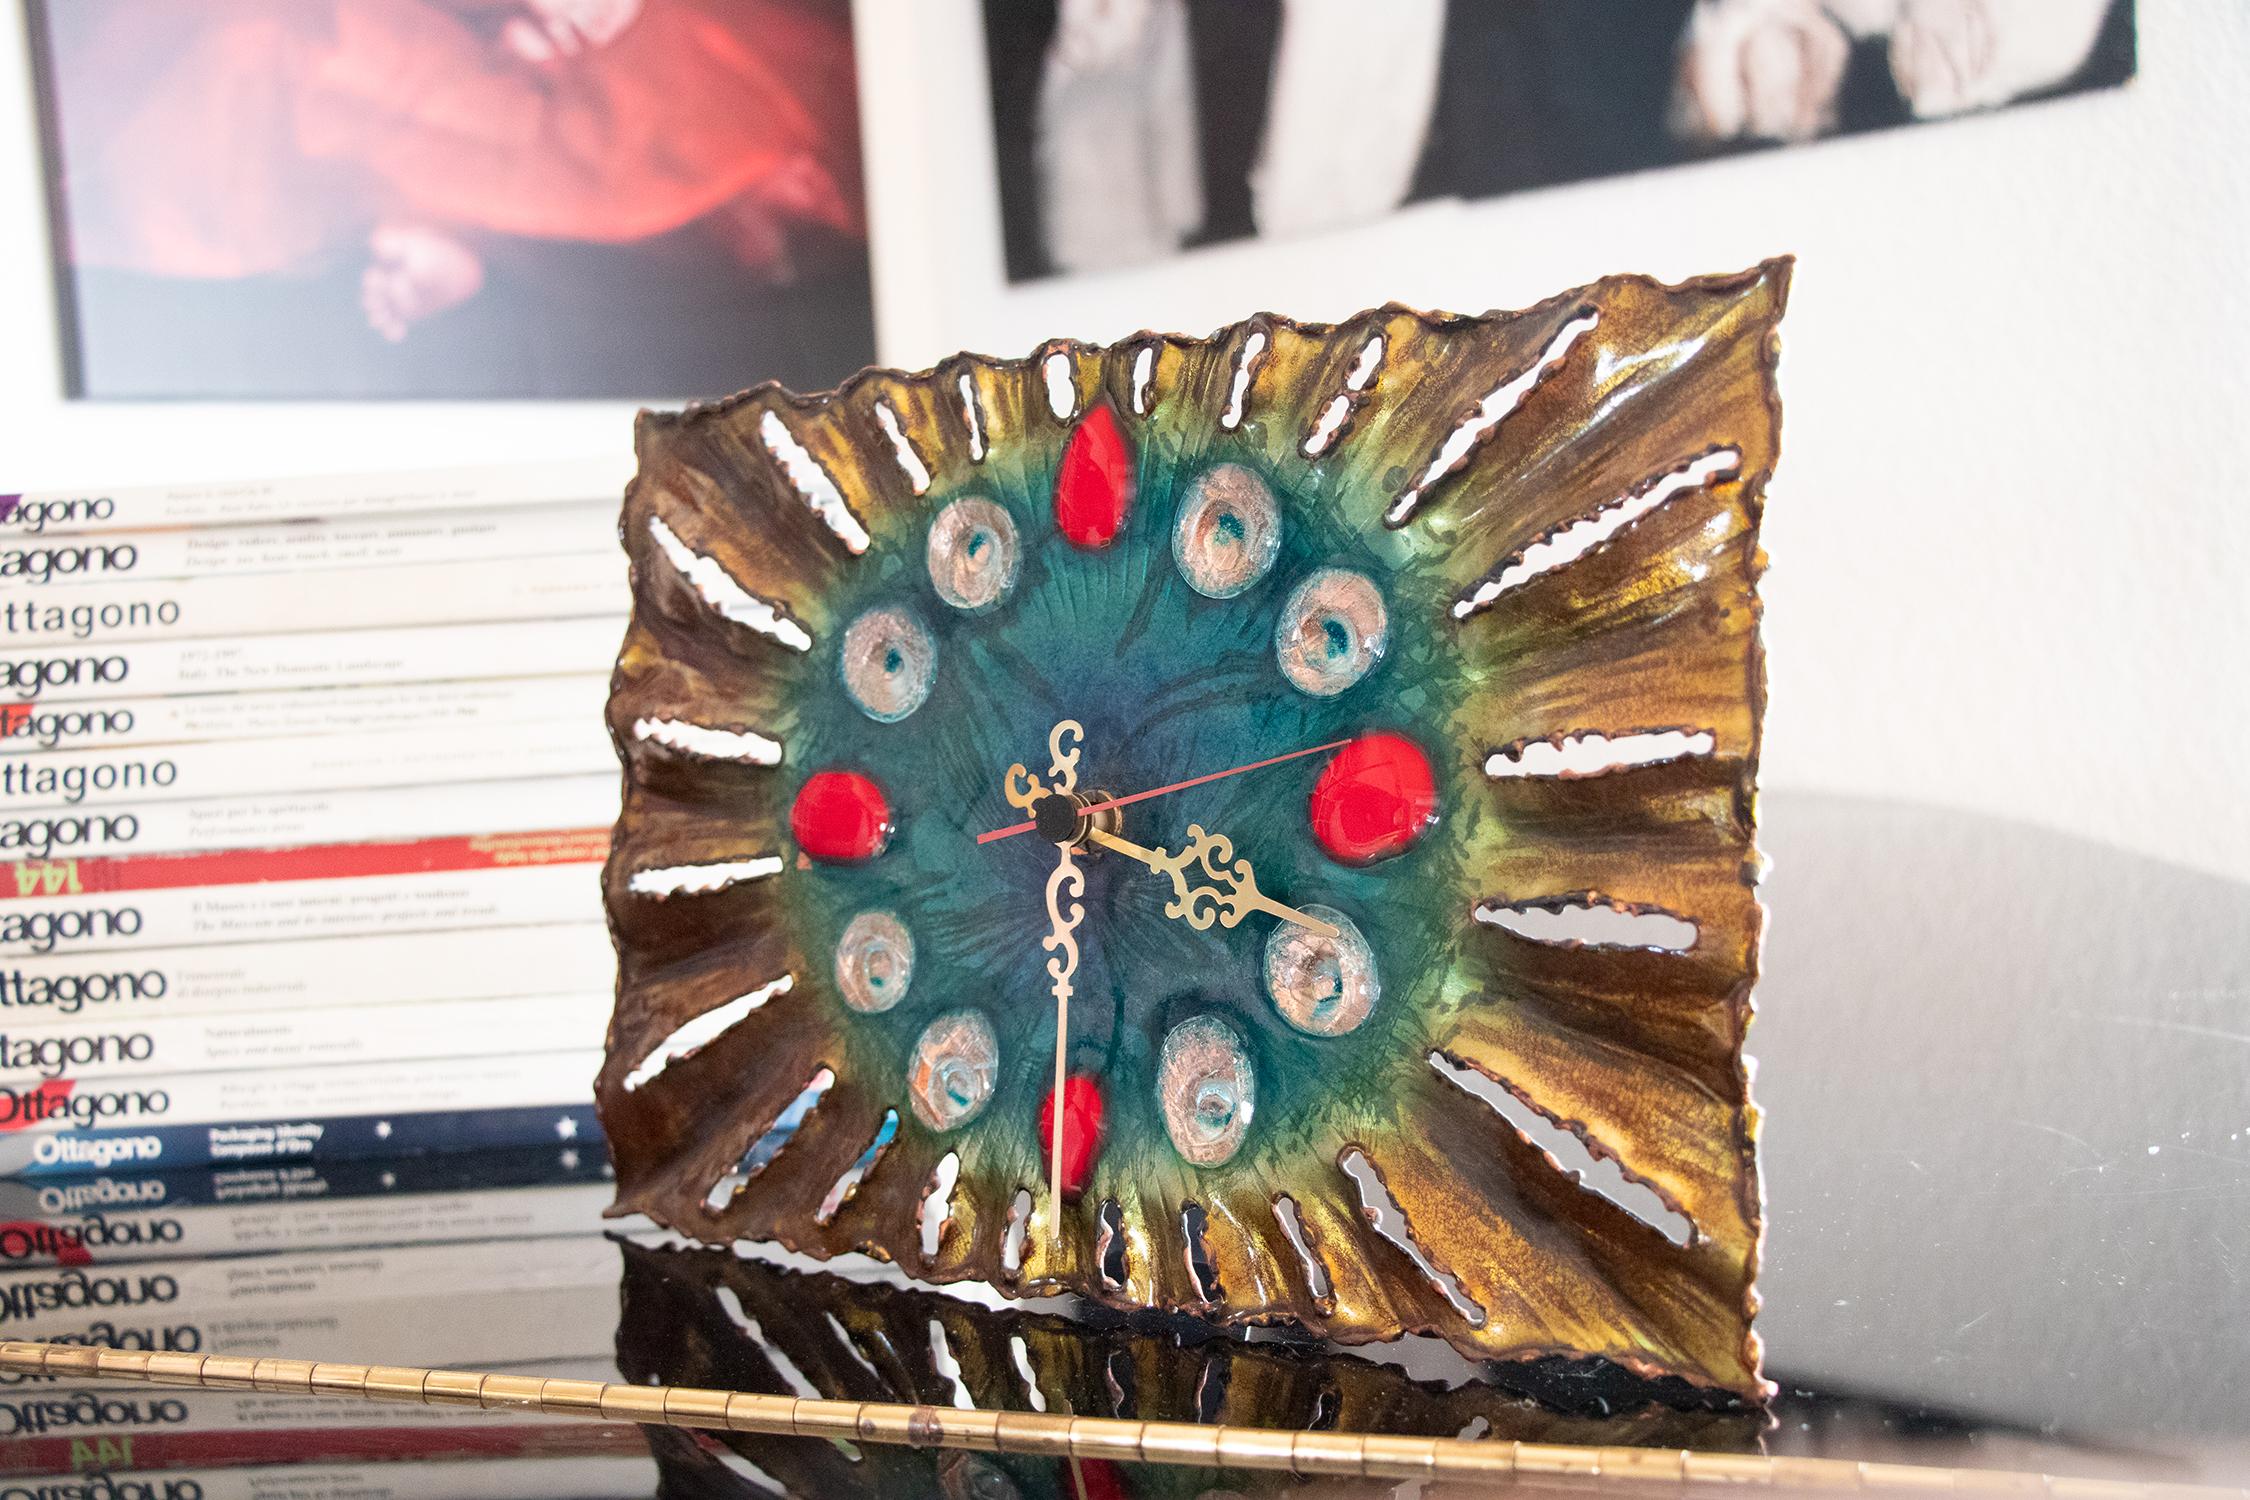 Emaillierte brutalistische Kupferuhr von Franco Bastianelli für Studio Cellini, Laurana Rame D'Arte in Pesaro, Italien 1960er Jahre. 
Handgefertigt auf einem Kupfersockel, im Feuer mit auffälligen Farben emailliert.
Die Uhr ist funktionstüchtig und